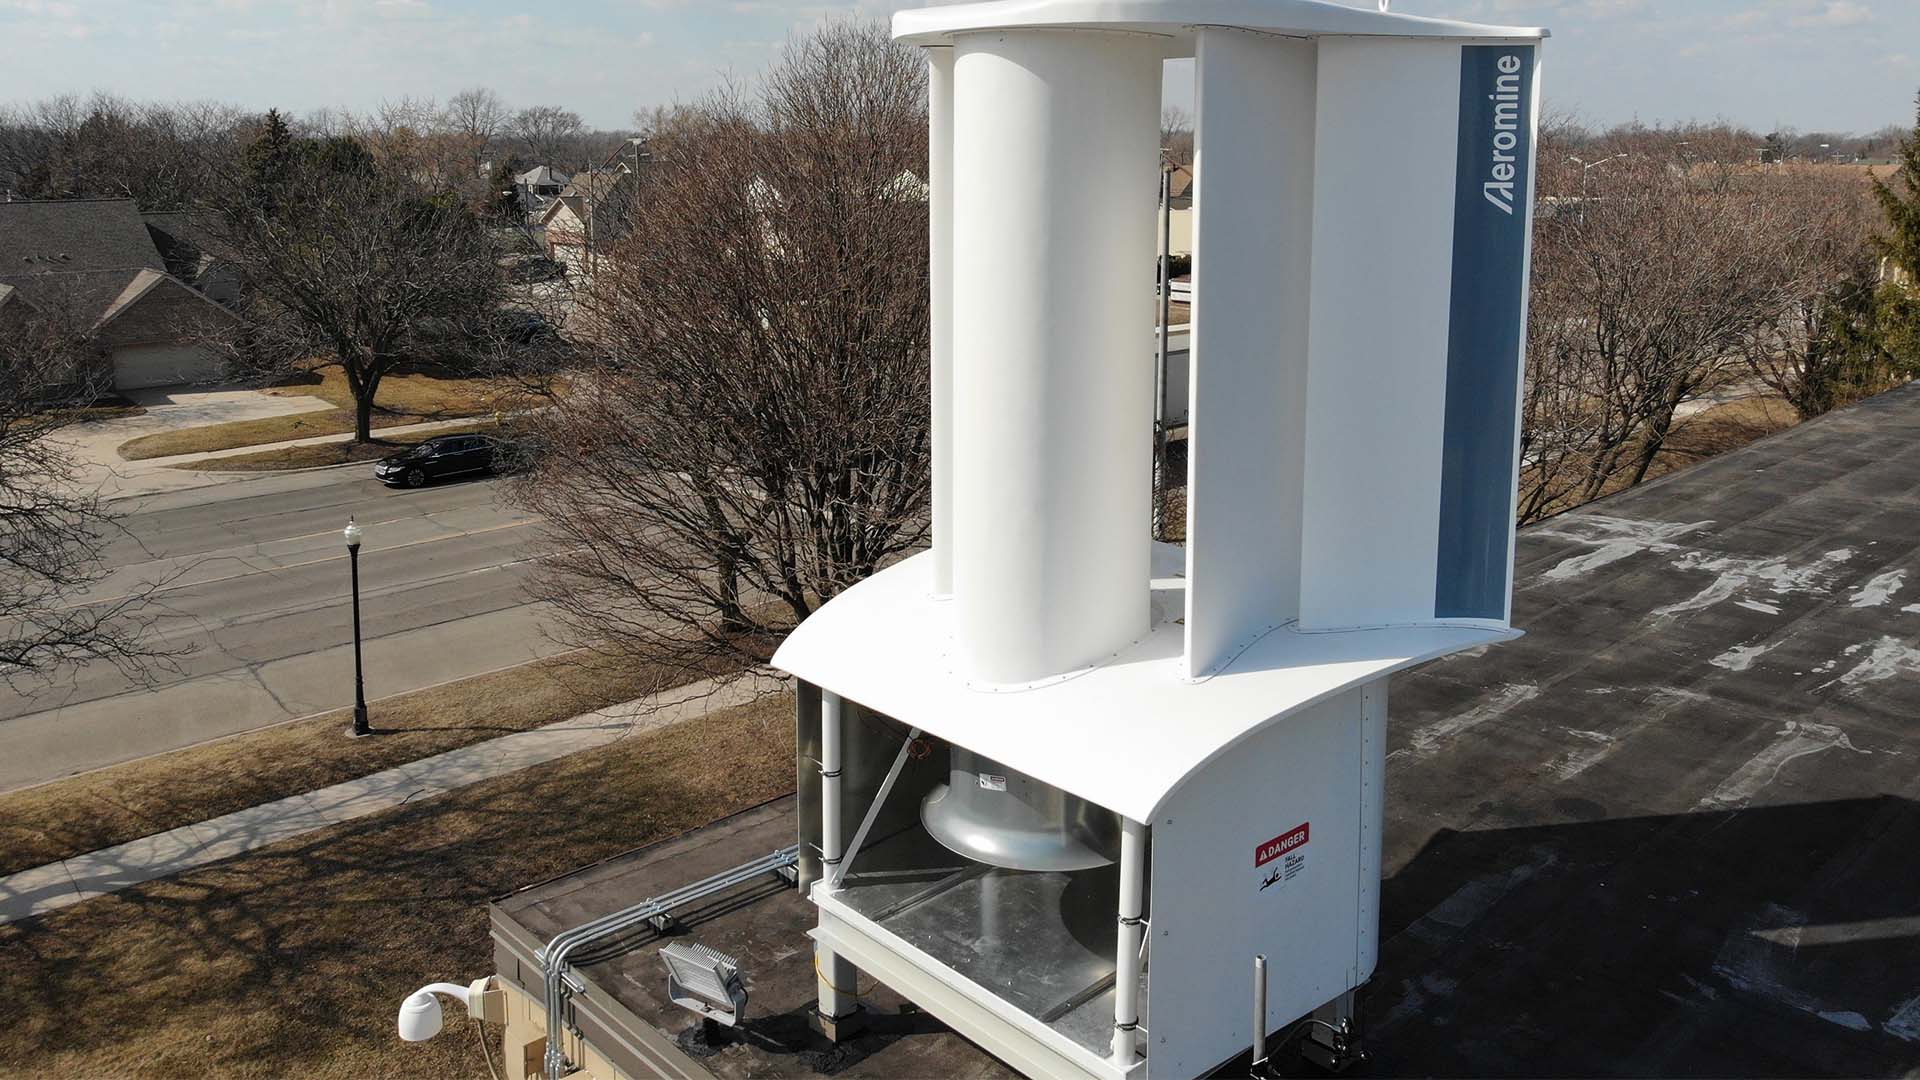 Aeromine Wind-Harvesting Unit installed on a roof